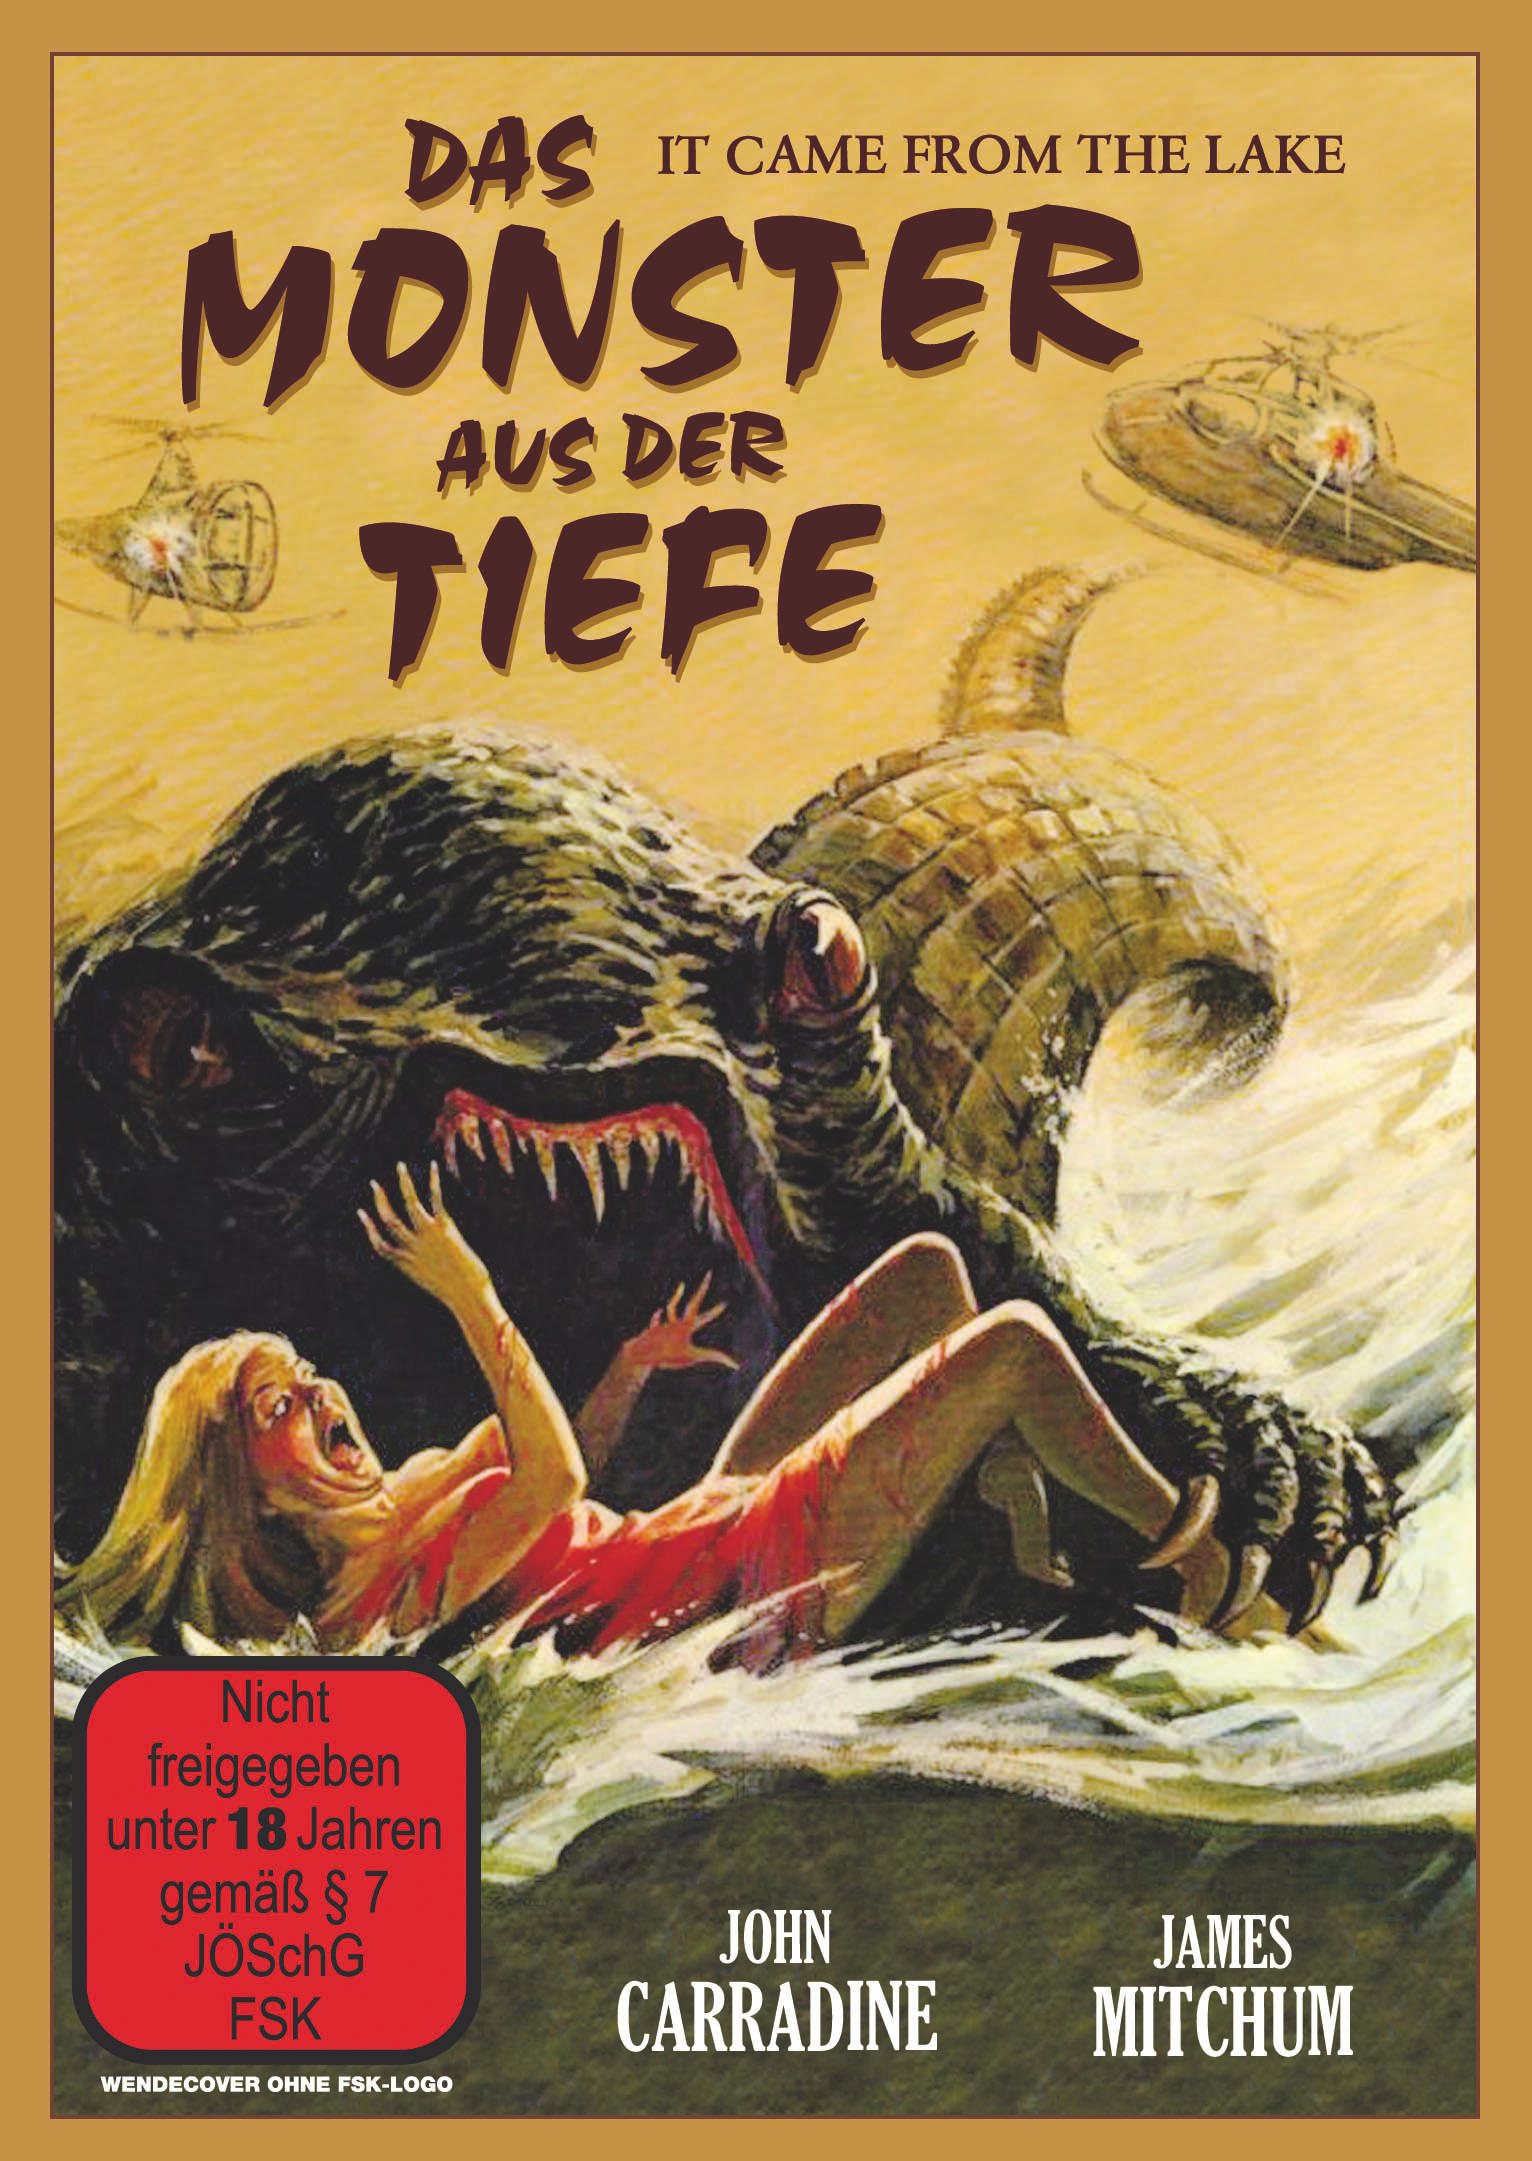 Das Monster Tiefe der DVD aus